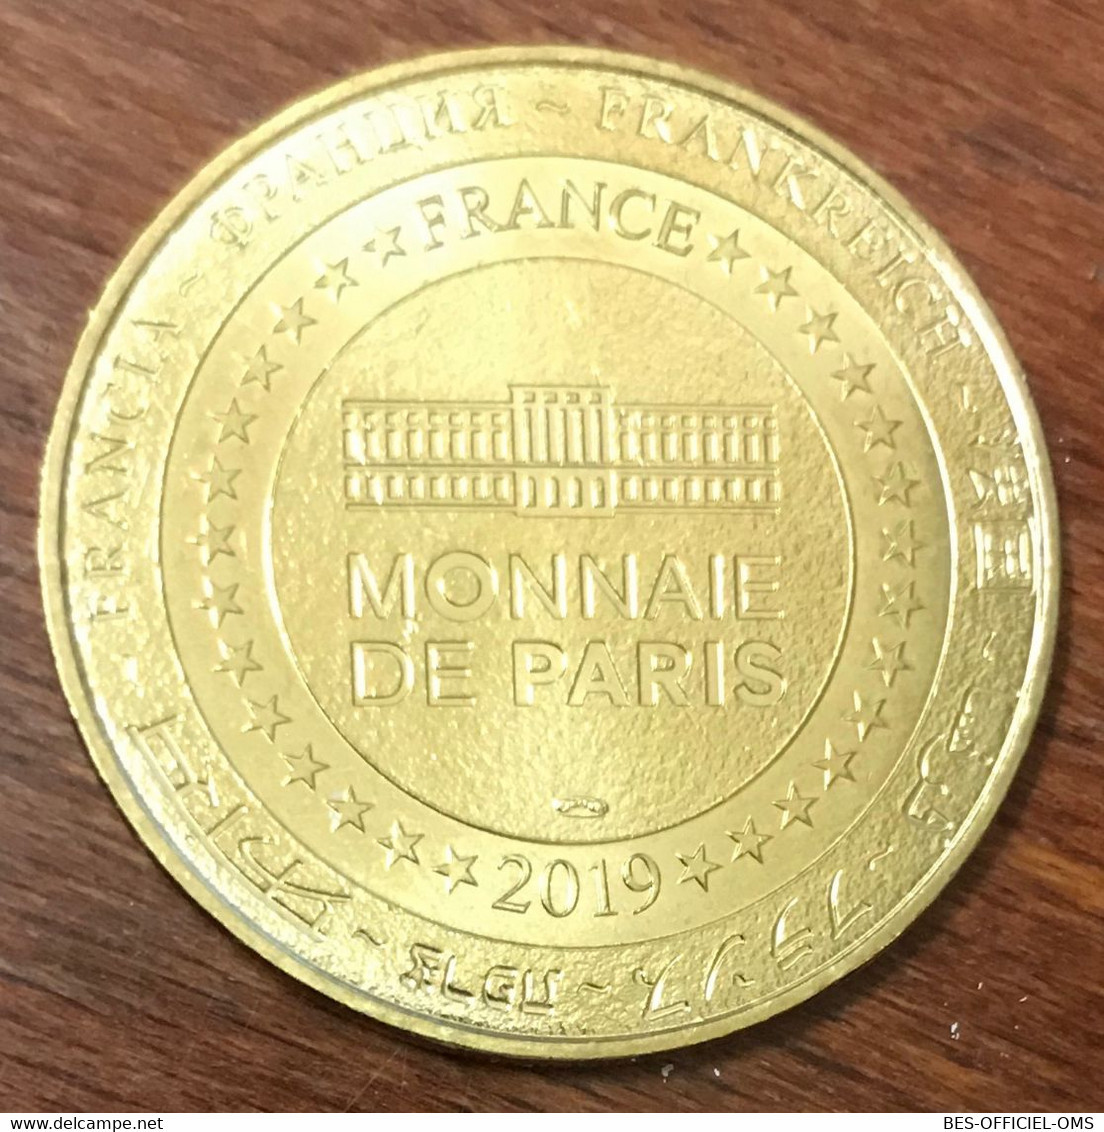 17 ZOO LA PALMYRE L'ÉLÉPHANT MDP 2019 MÉDAILLE SOUVENIR MONNAIE DE PARIS JETON TOURISTIQUE MEDALS COINS TOKENS - 2019